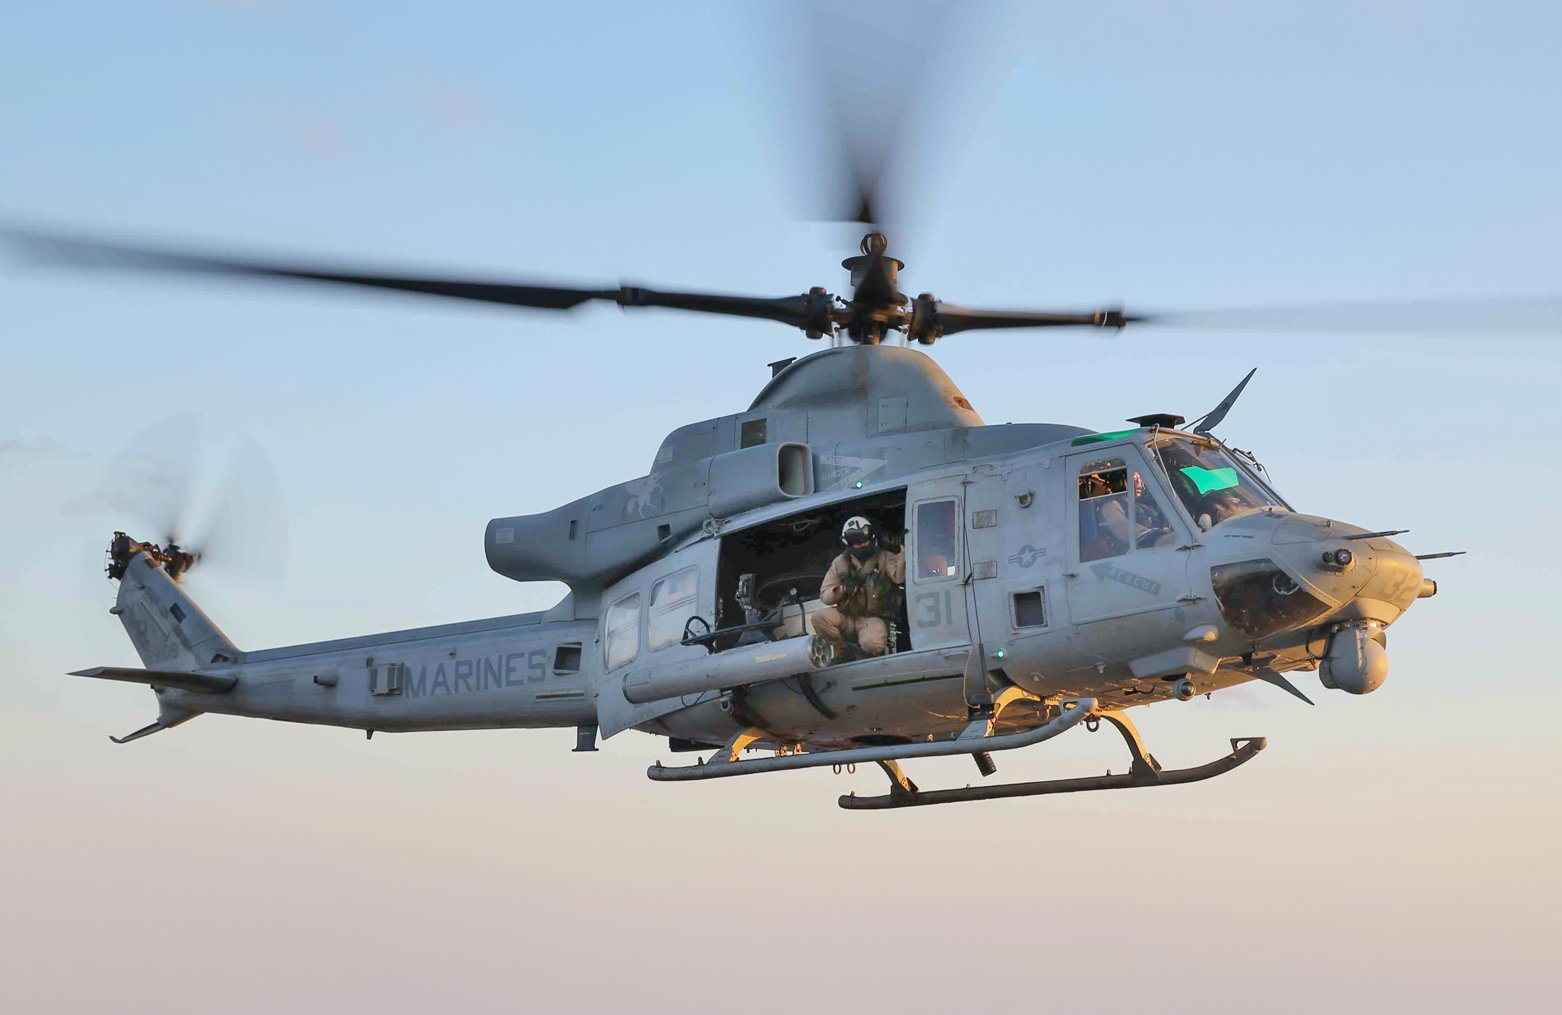 UH-1Y Venom z dobrze widocznym uzbrojeniem i głowica optoelektroniczną. Fot. US Marines